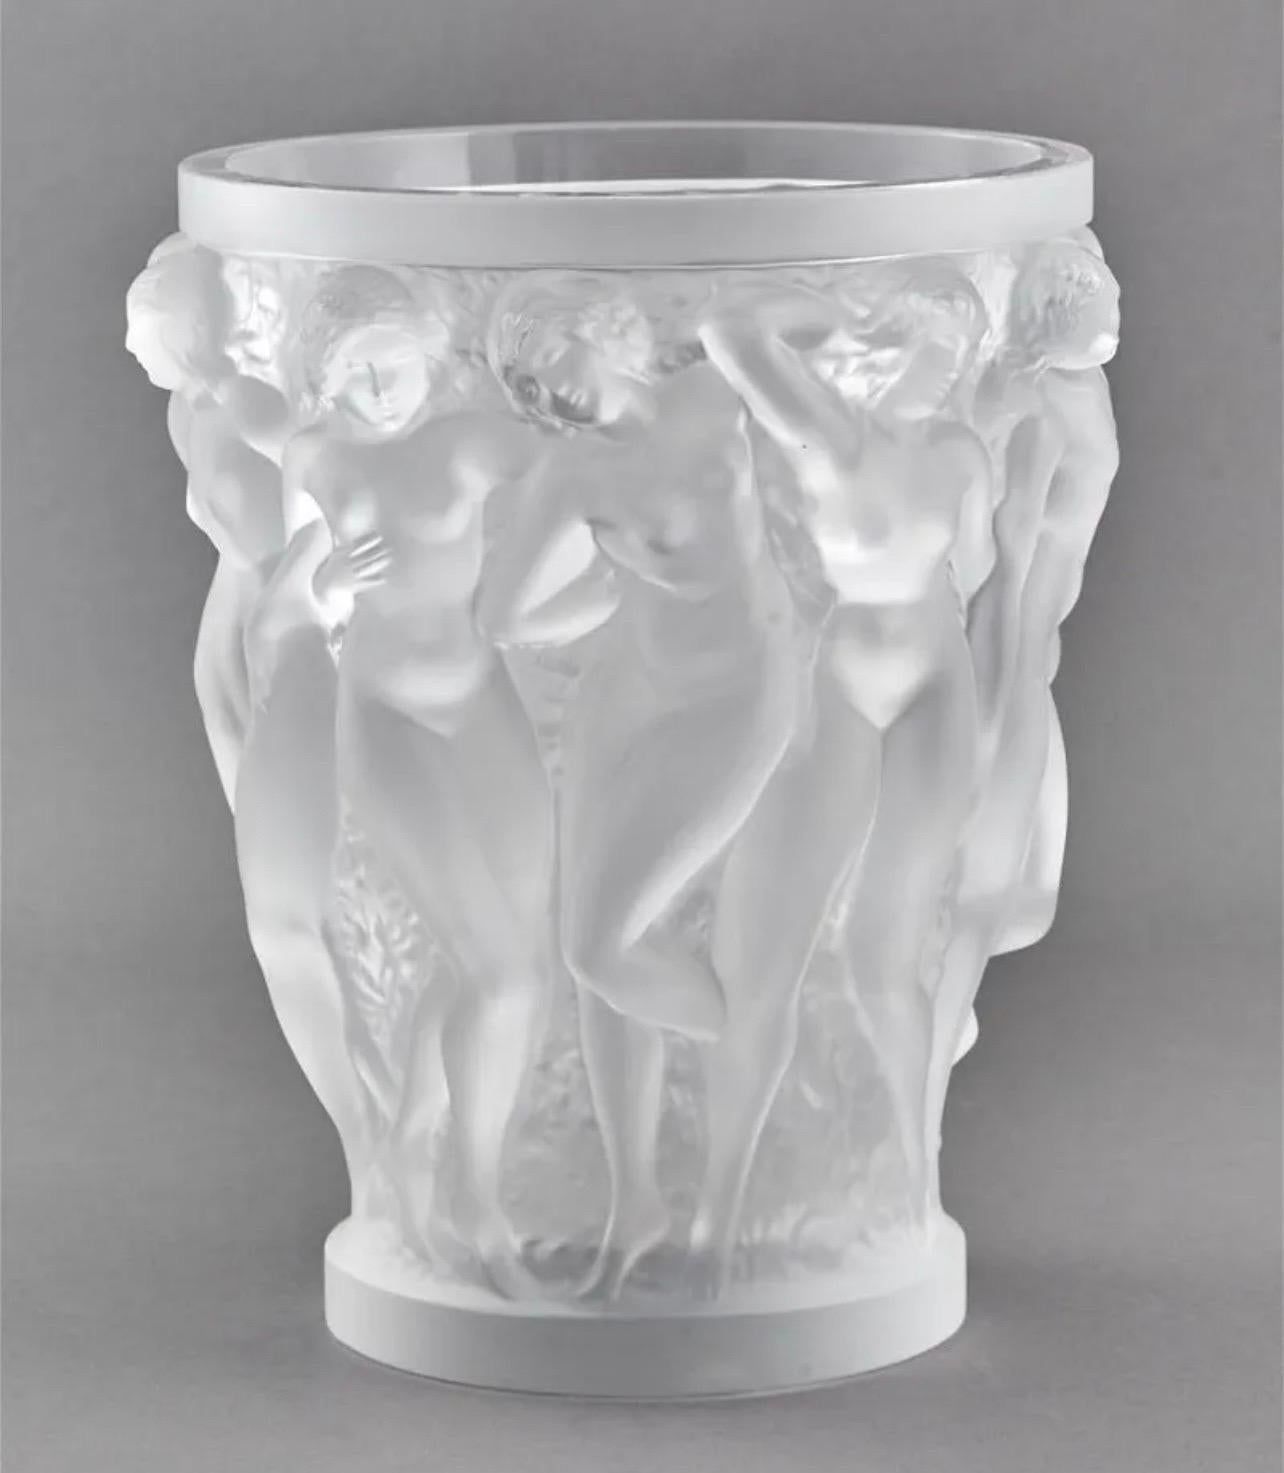 Merveilleux vase 'Bacchantes' en cristal de Lalique France en très bon état.
Le corps cylindrique est moulé d'une scène continue de jeunes filles dansantes, achevée dans une finition givrée. 
Inscrit 'Lalique France' et conservant son autocollant